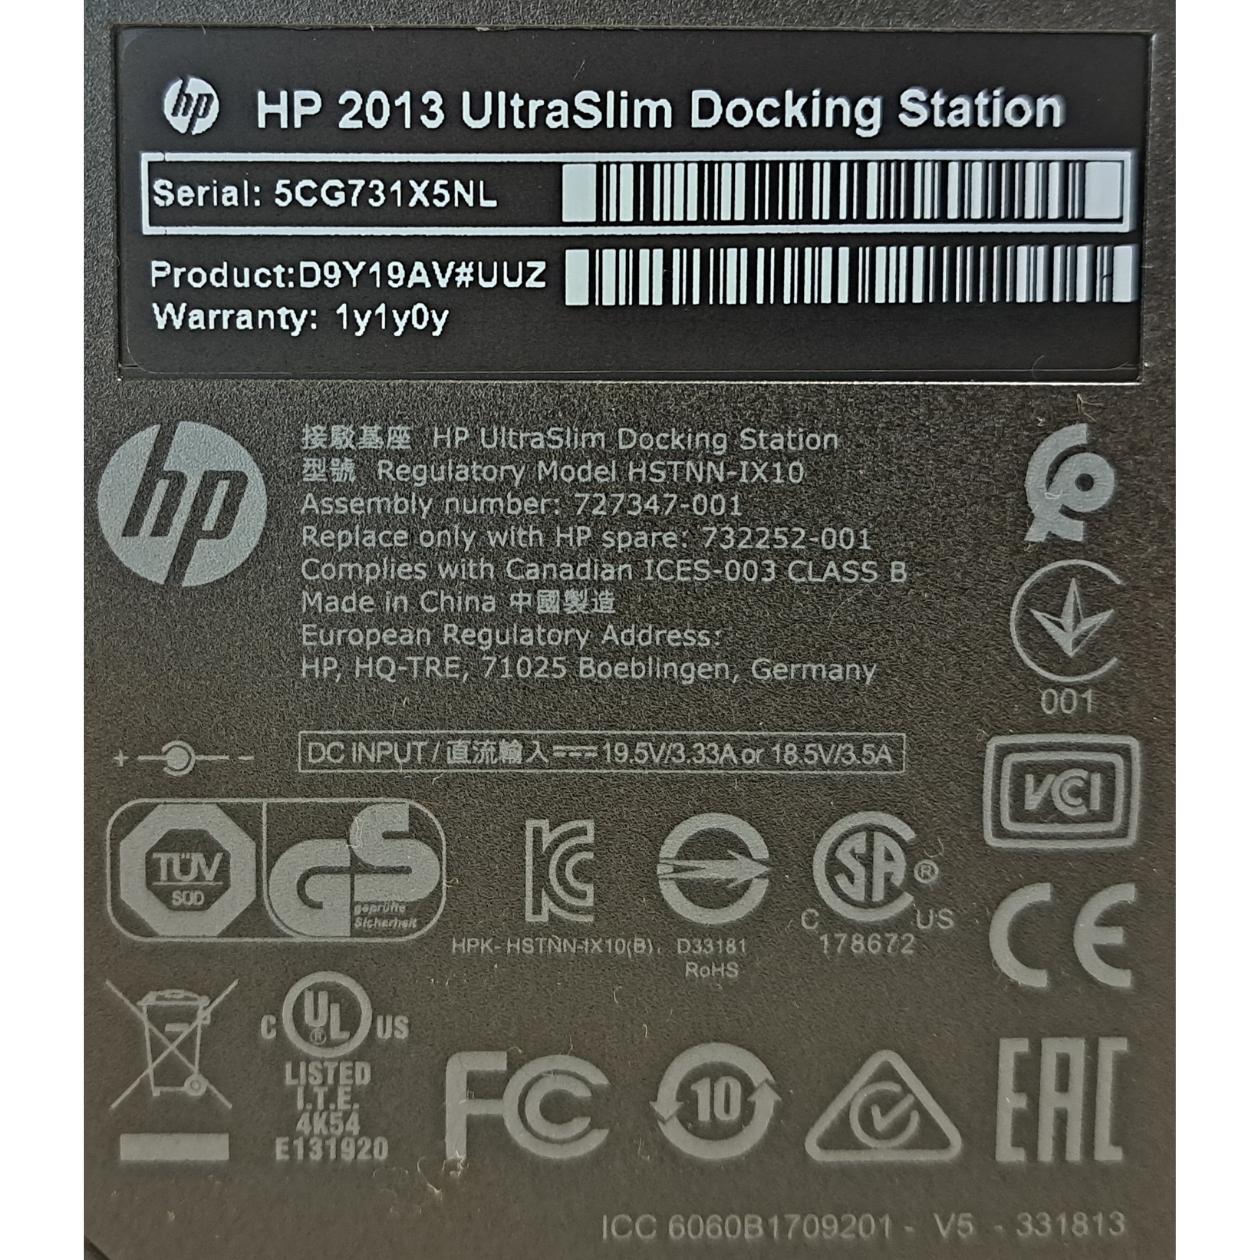 HP Dockingstation 2013 Ultraslim - Gebraucht - Sehr gut